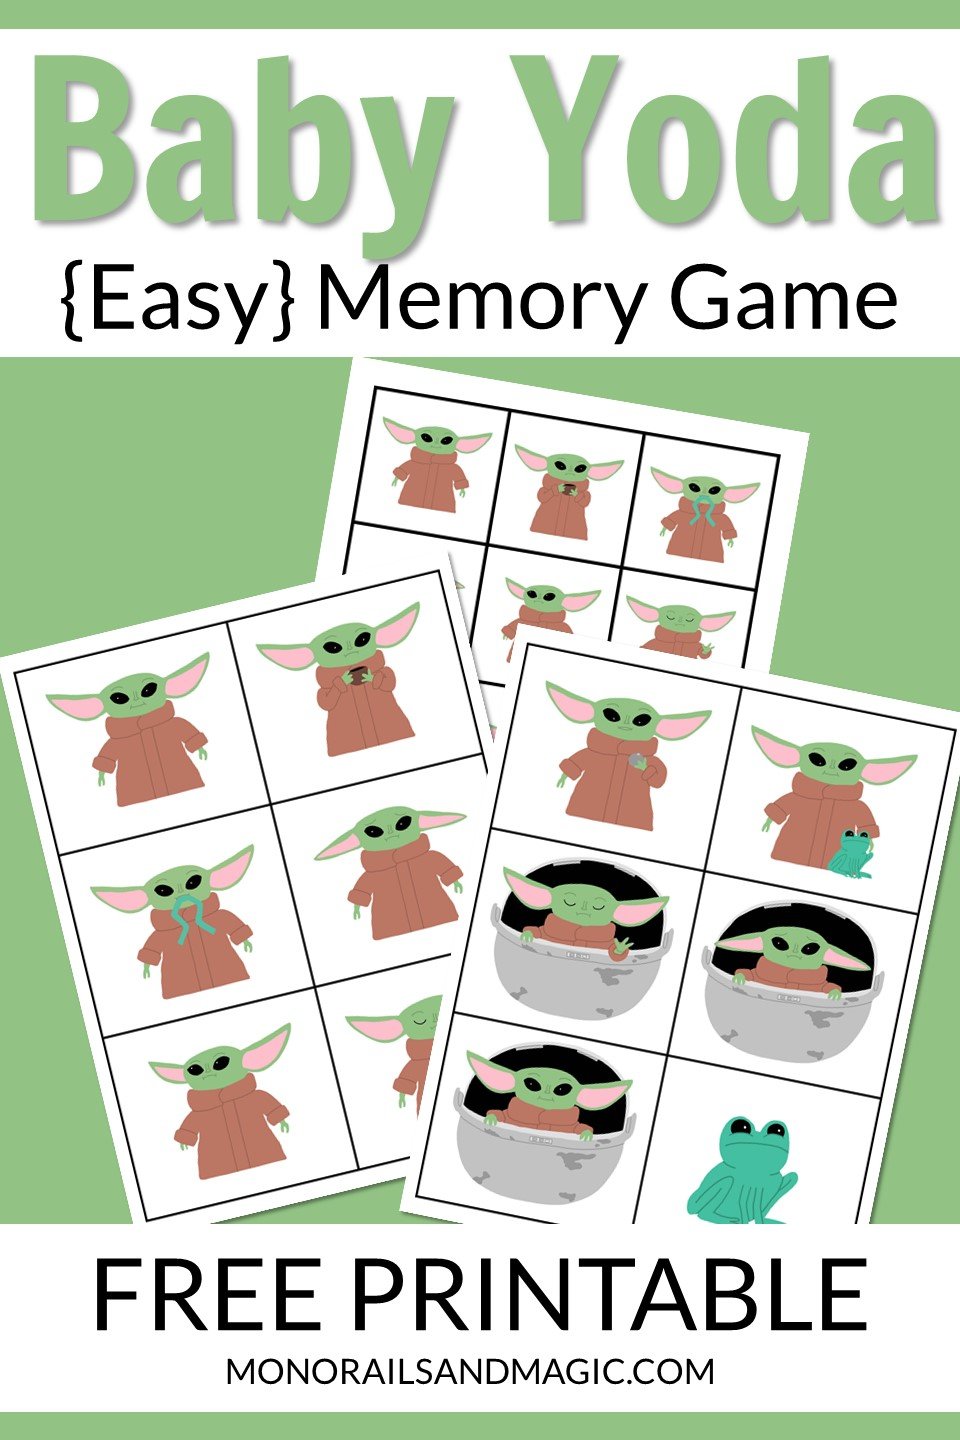 Free printable Baby Yoda memory matching game for kids.